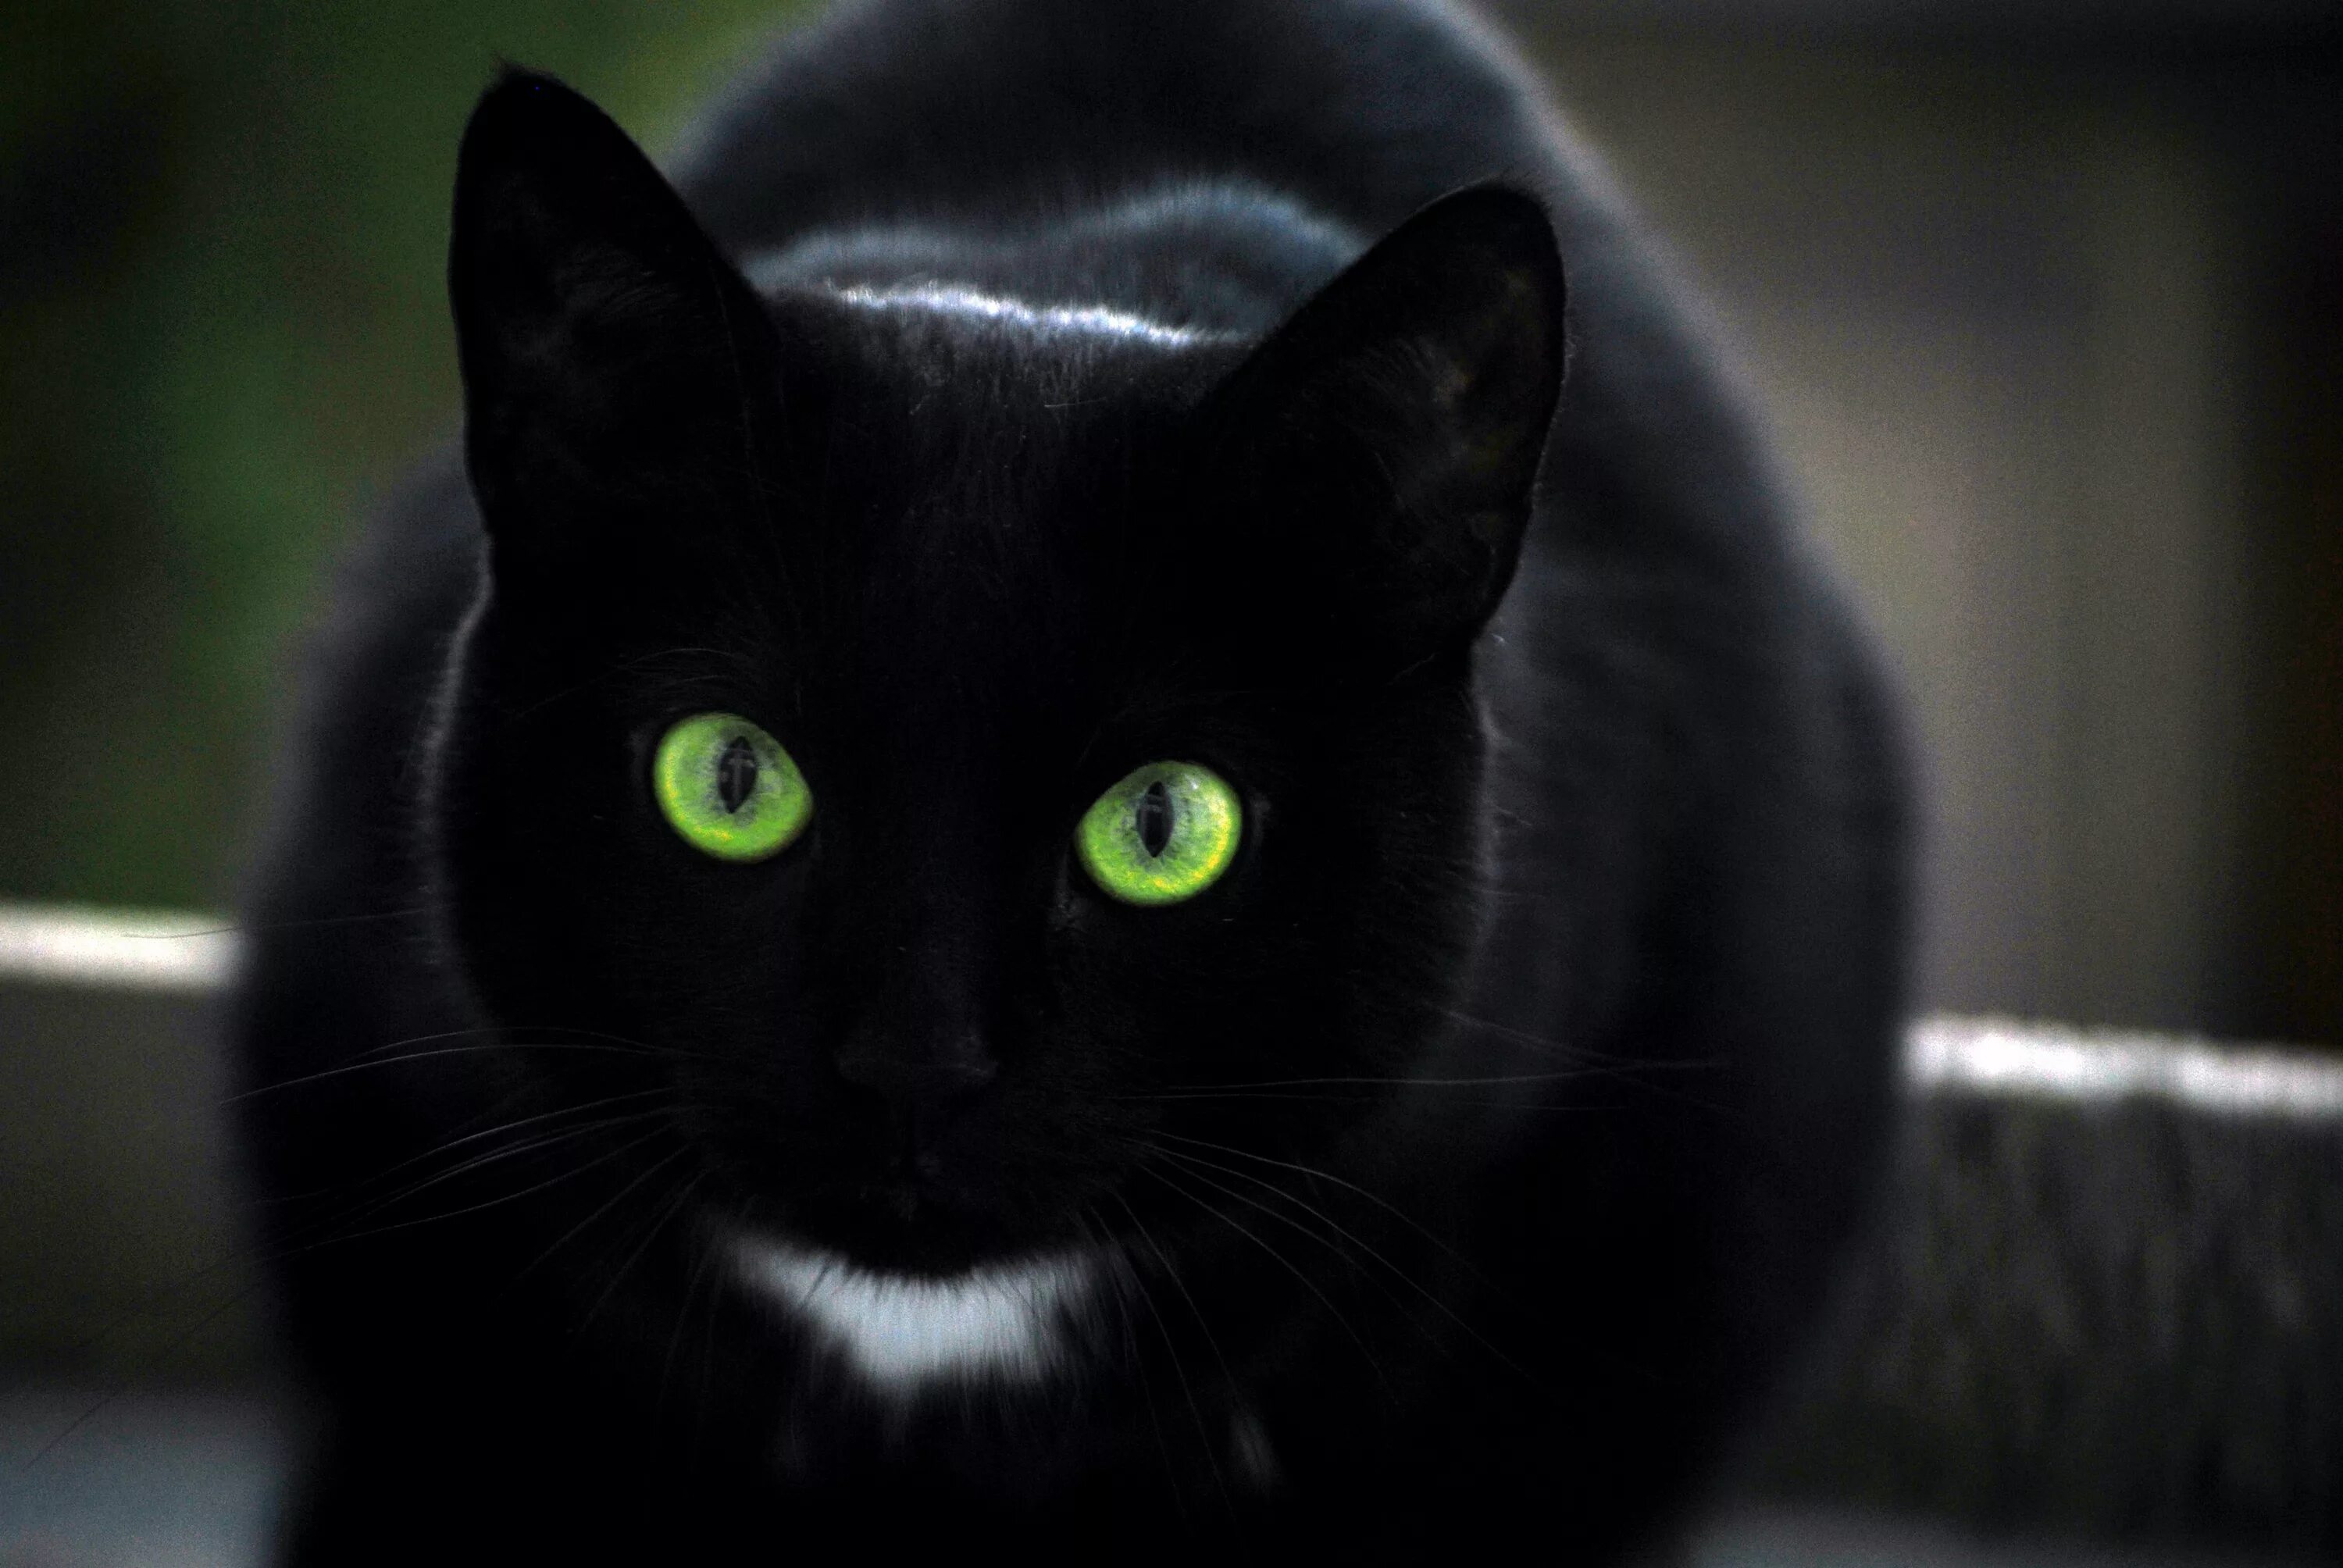 Black cat eye. Бомбейские кошки чёрно-белые. Бомбейская кошка с зелеными глазами. Бомбейская кошка черно белая. Кошка порода Бомбейская чёрная зеленые глаза.